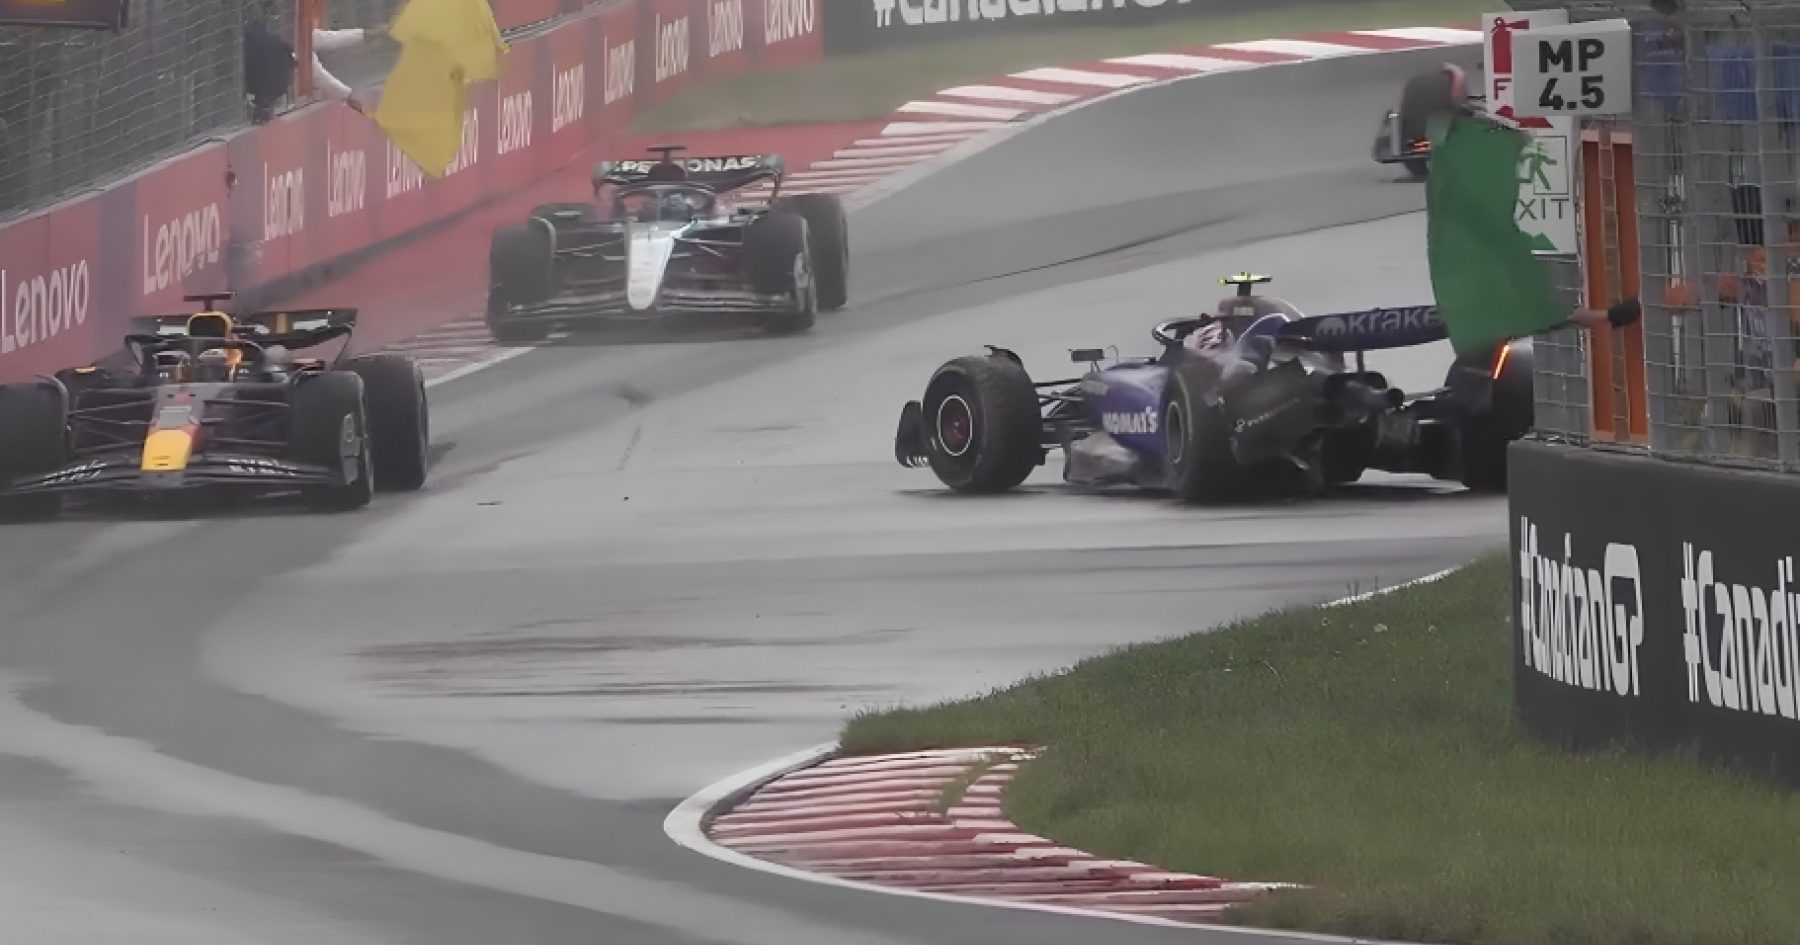 Canadian Grand Prix: Sargent Battles On Despite Devastating Crash